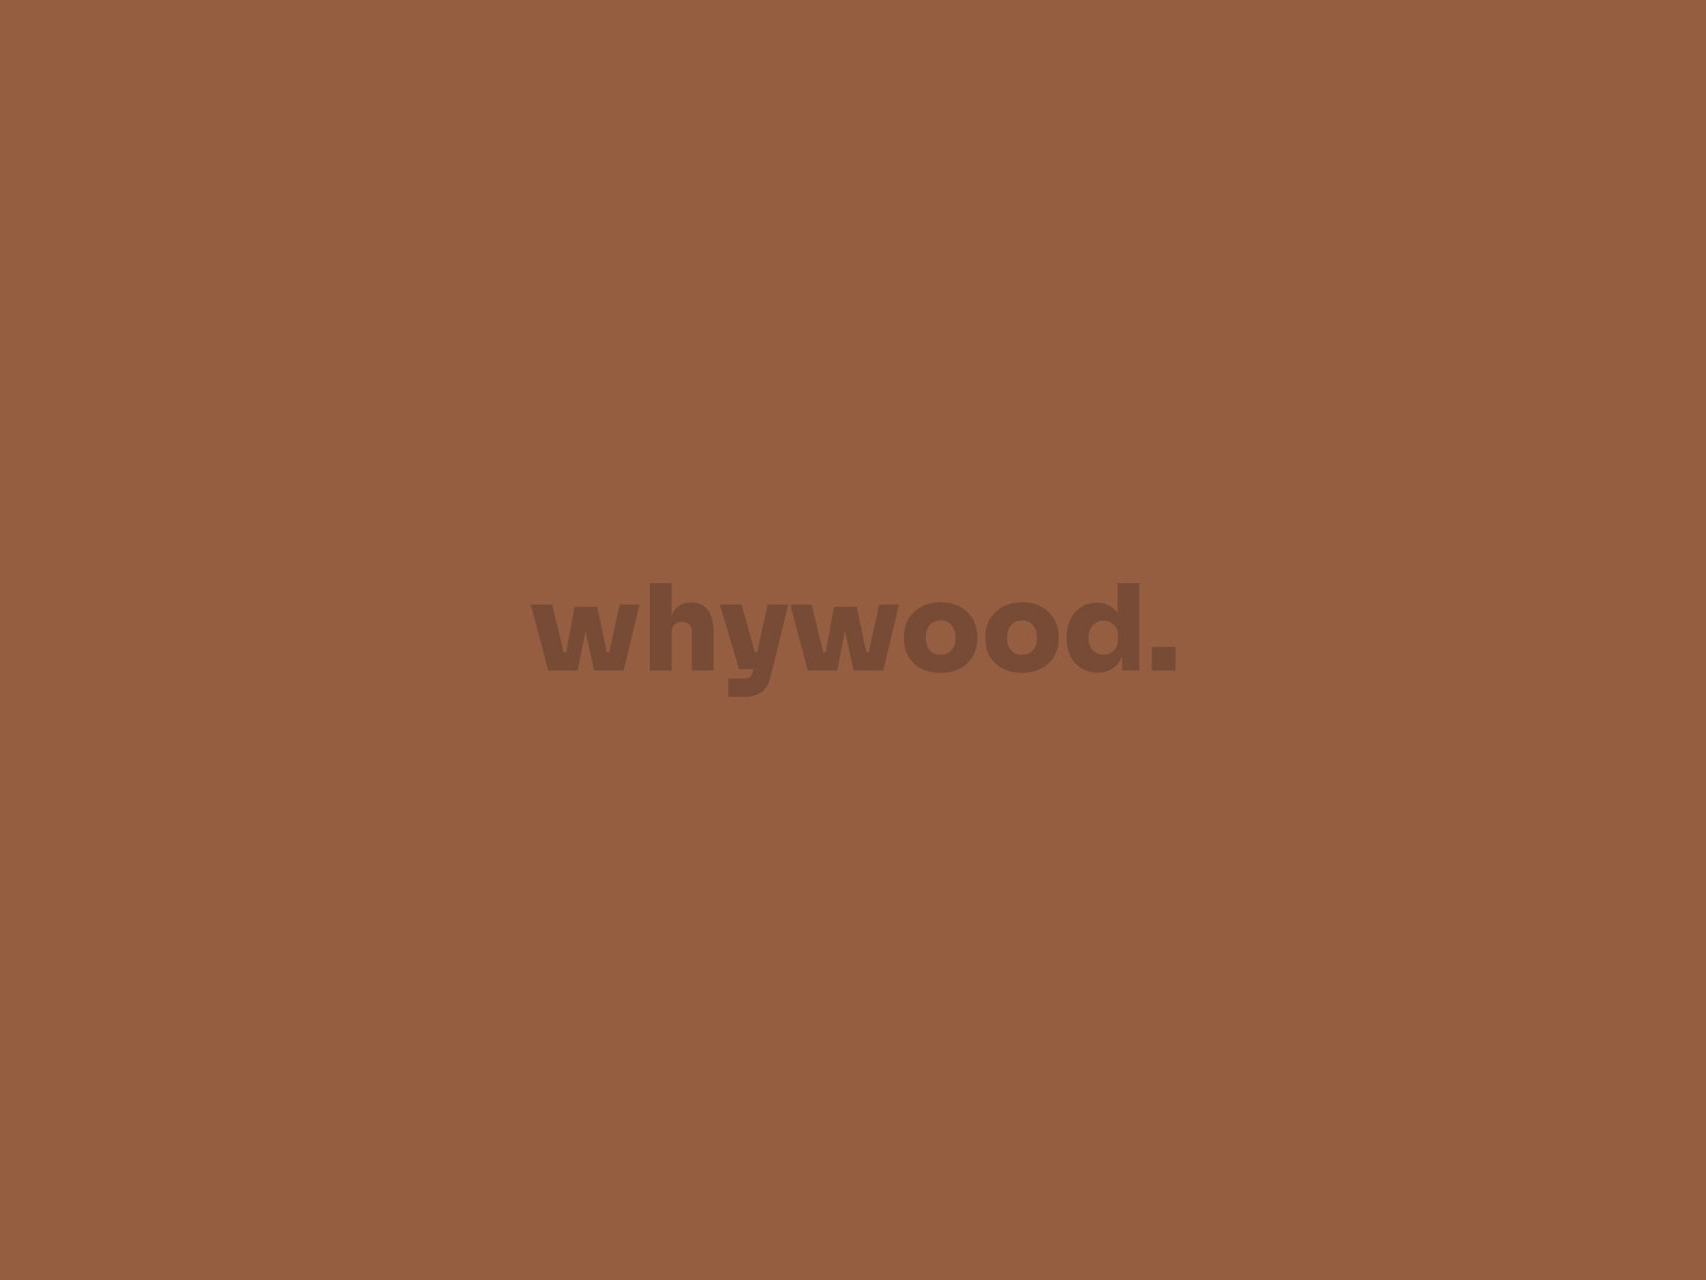 whywood